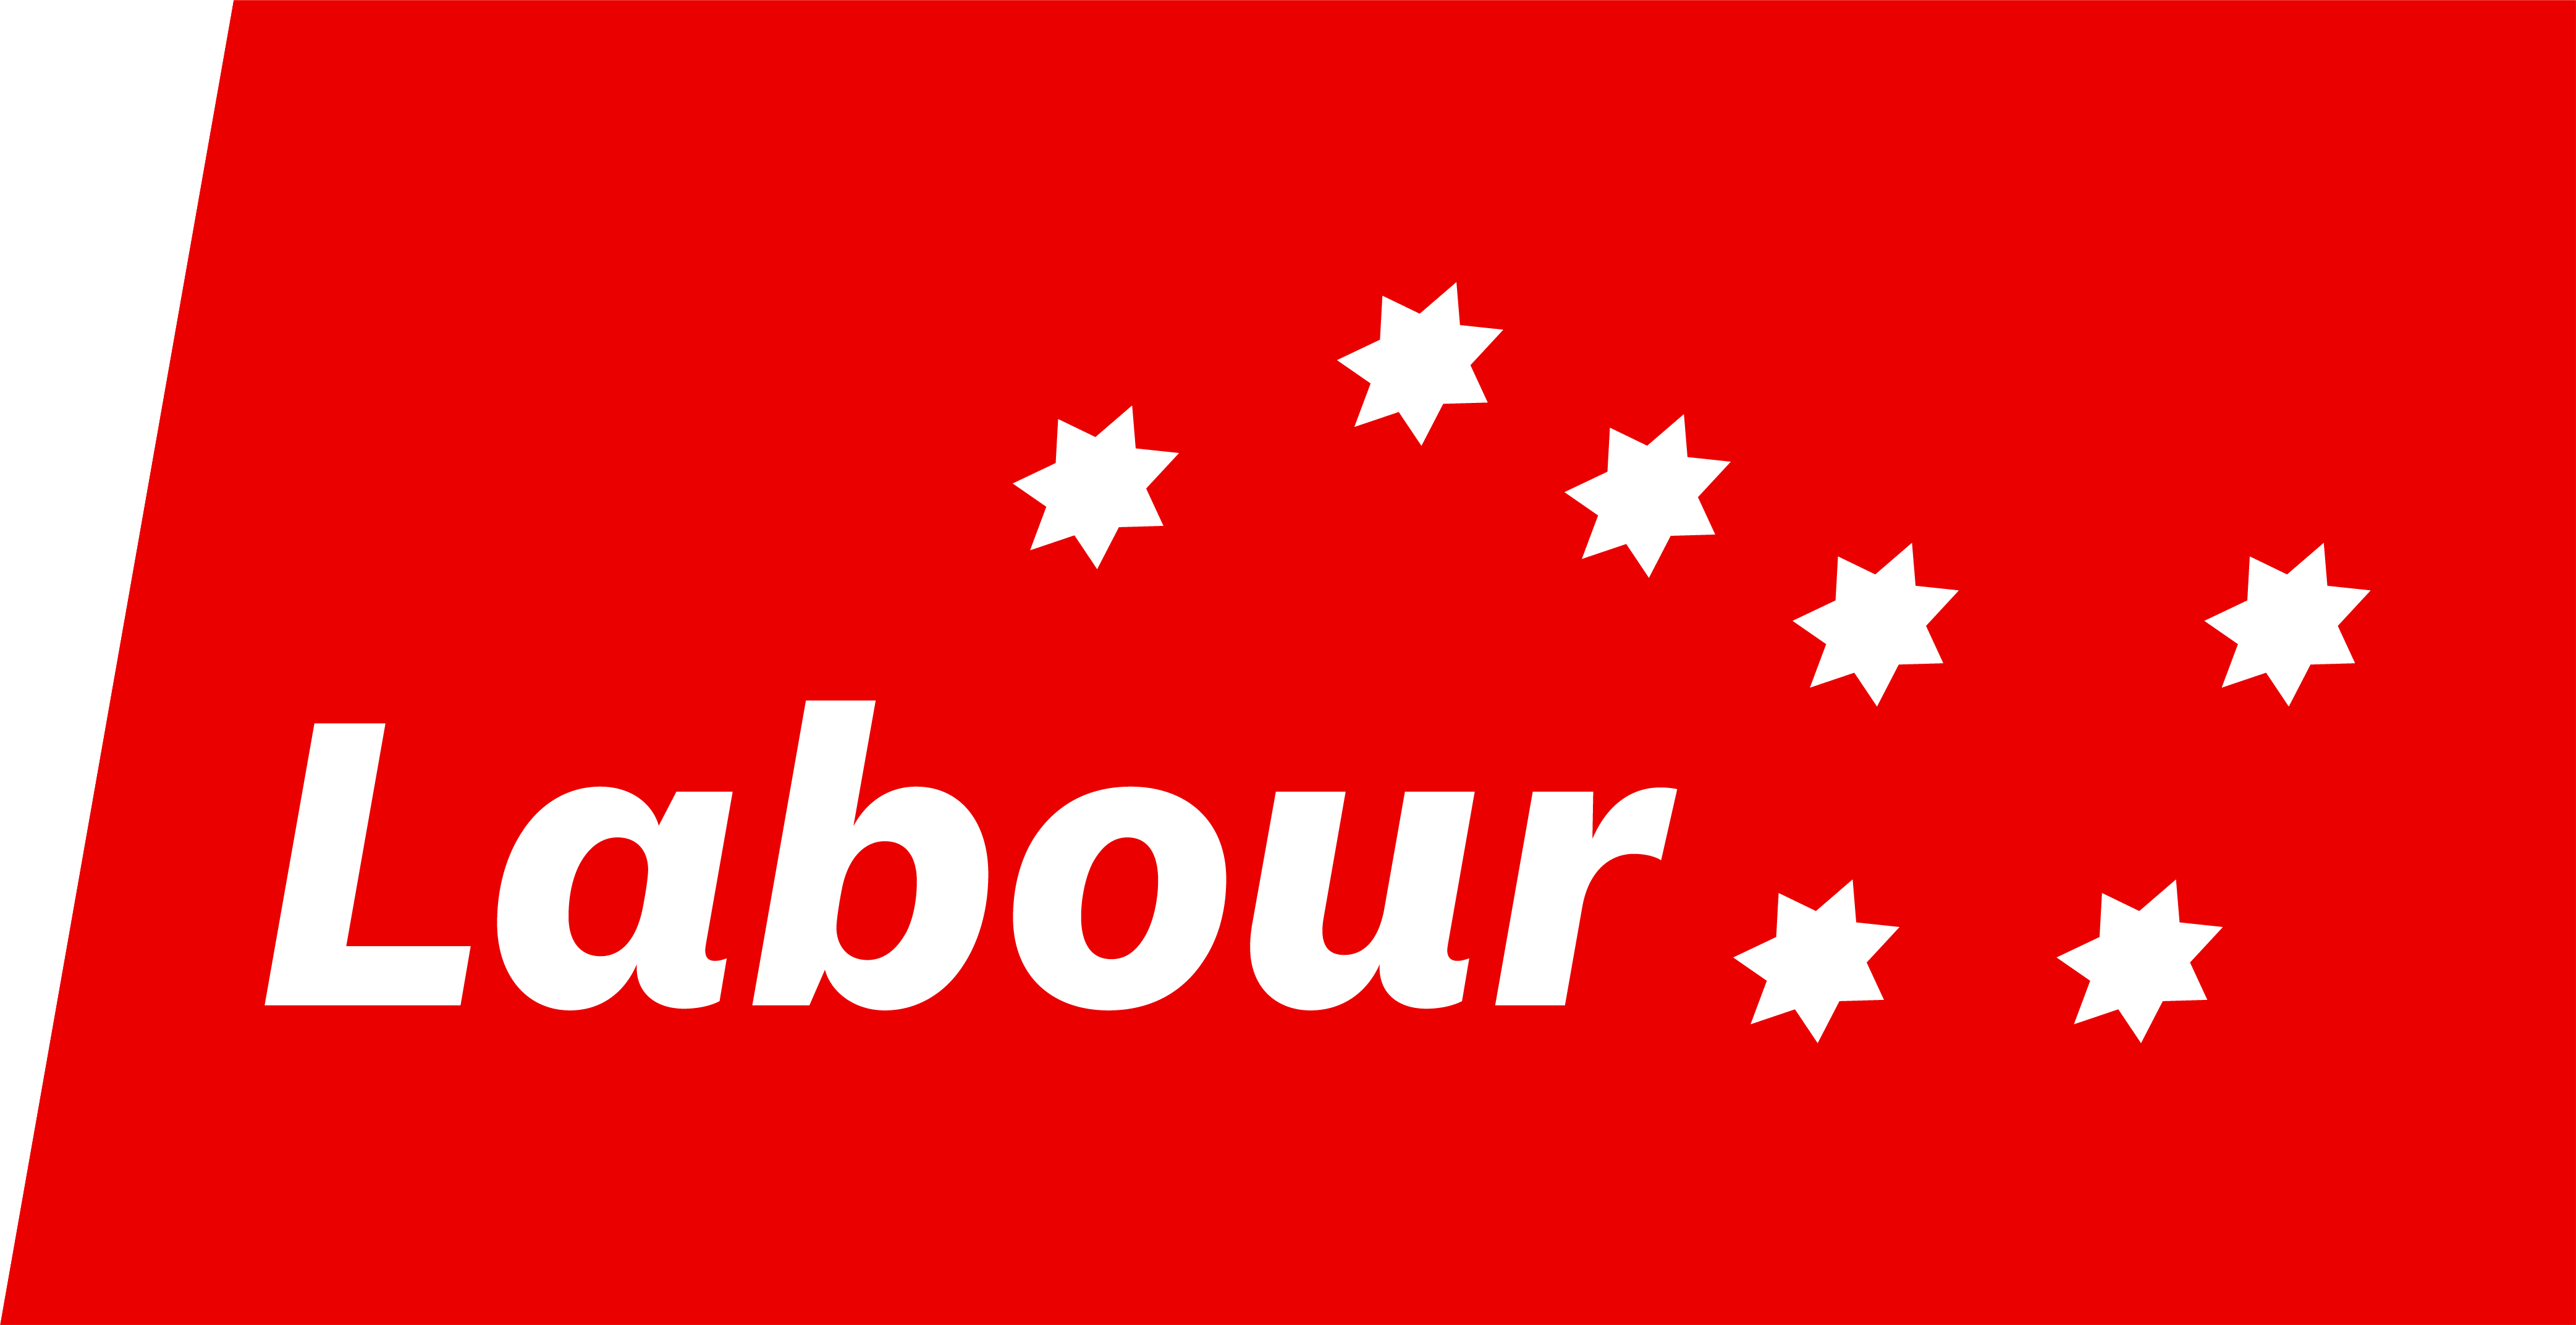 Labour - 54 Donate